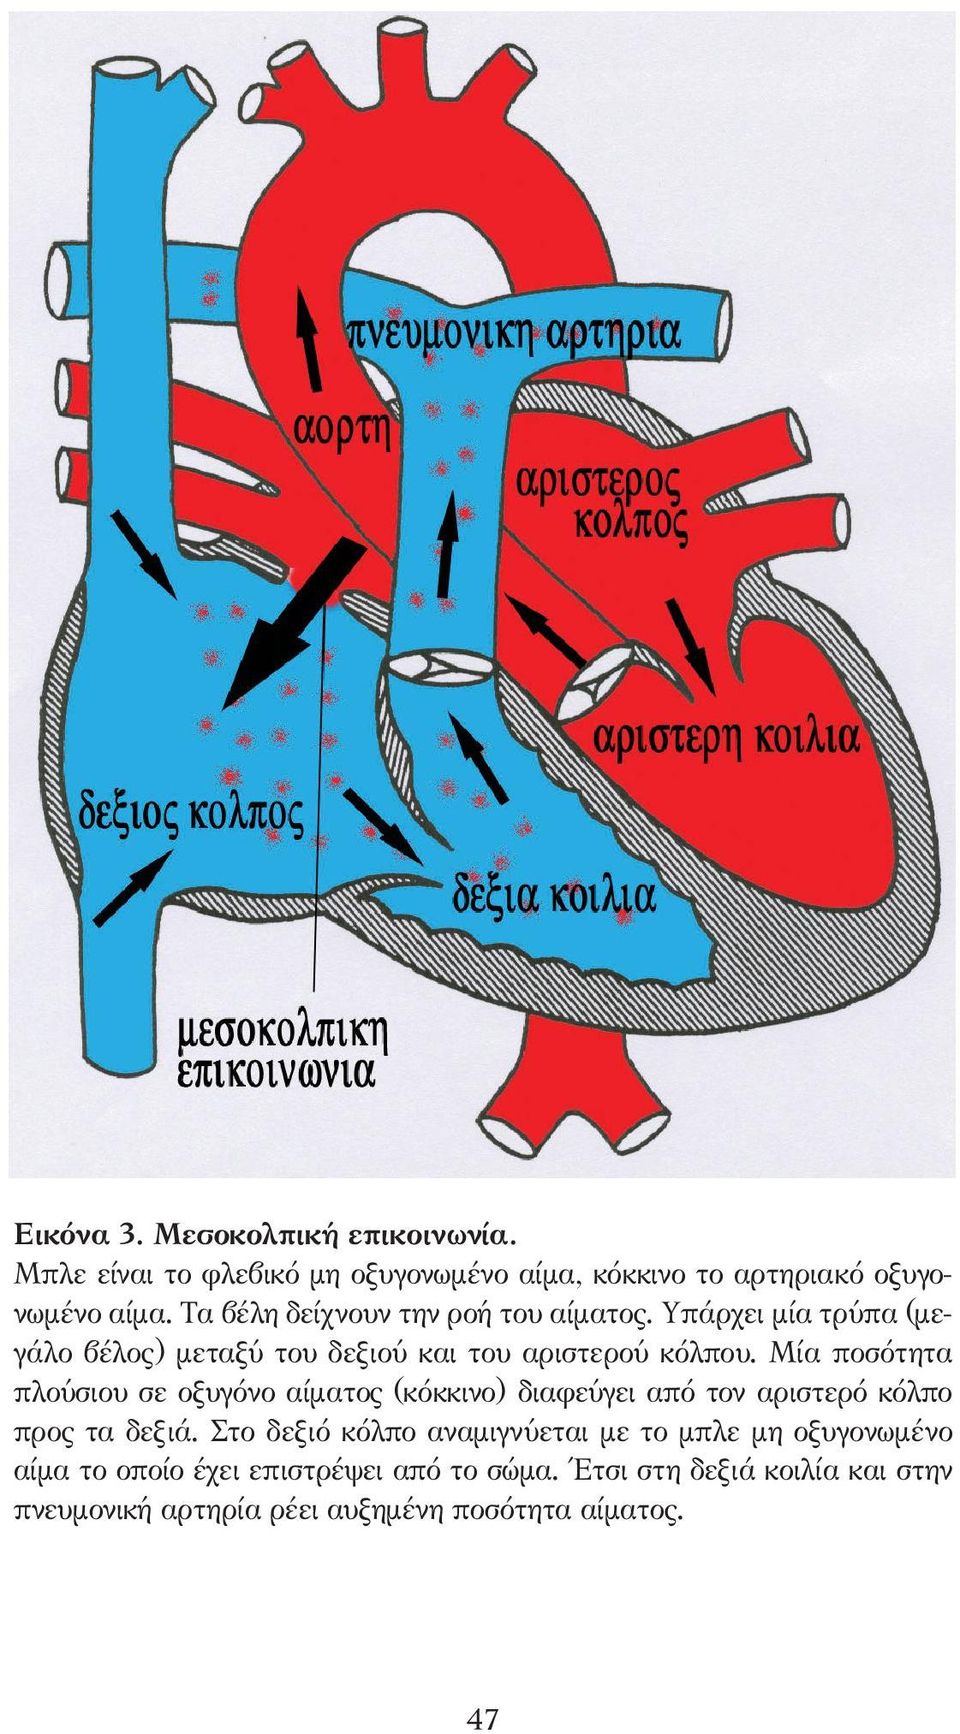 Μία ποσότητα πλούσιου σε οξυγόνο αίµατος (κόκκινο) διαφεύγει από τον αριστερό κόλπο προς τα δεξιά.